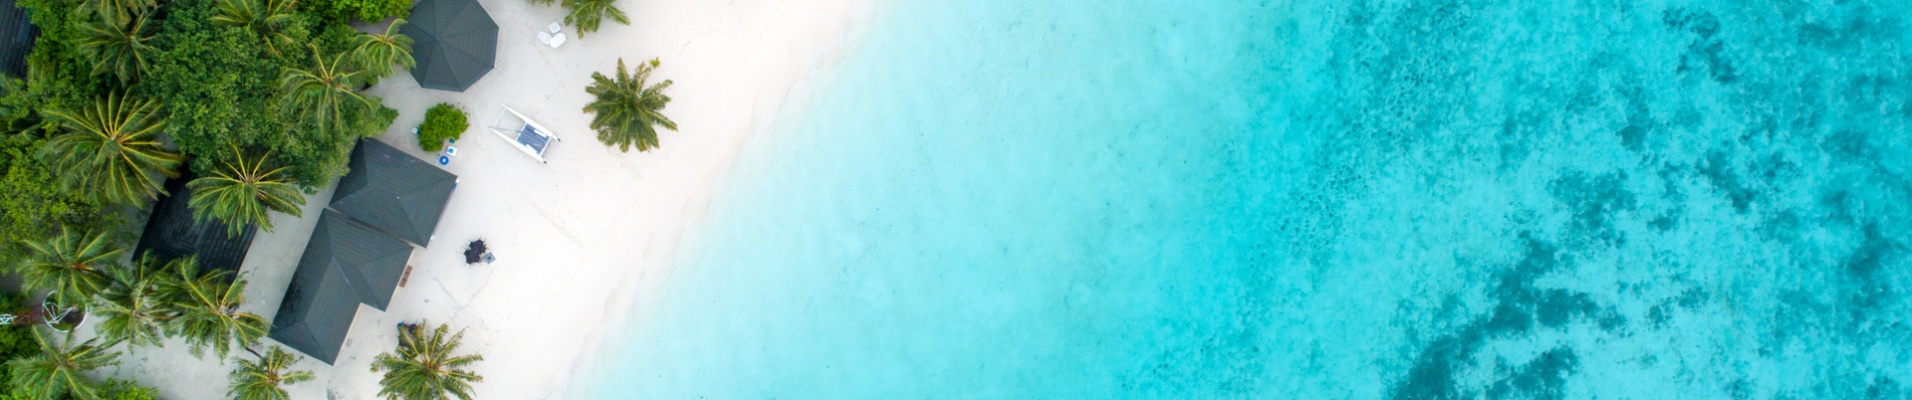 plage-maldives-turquoise